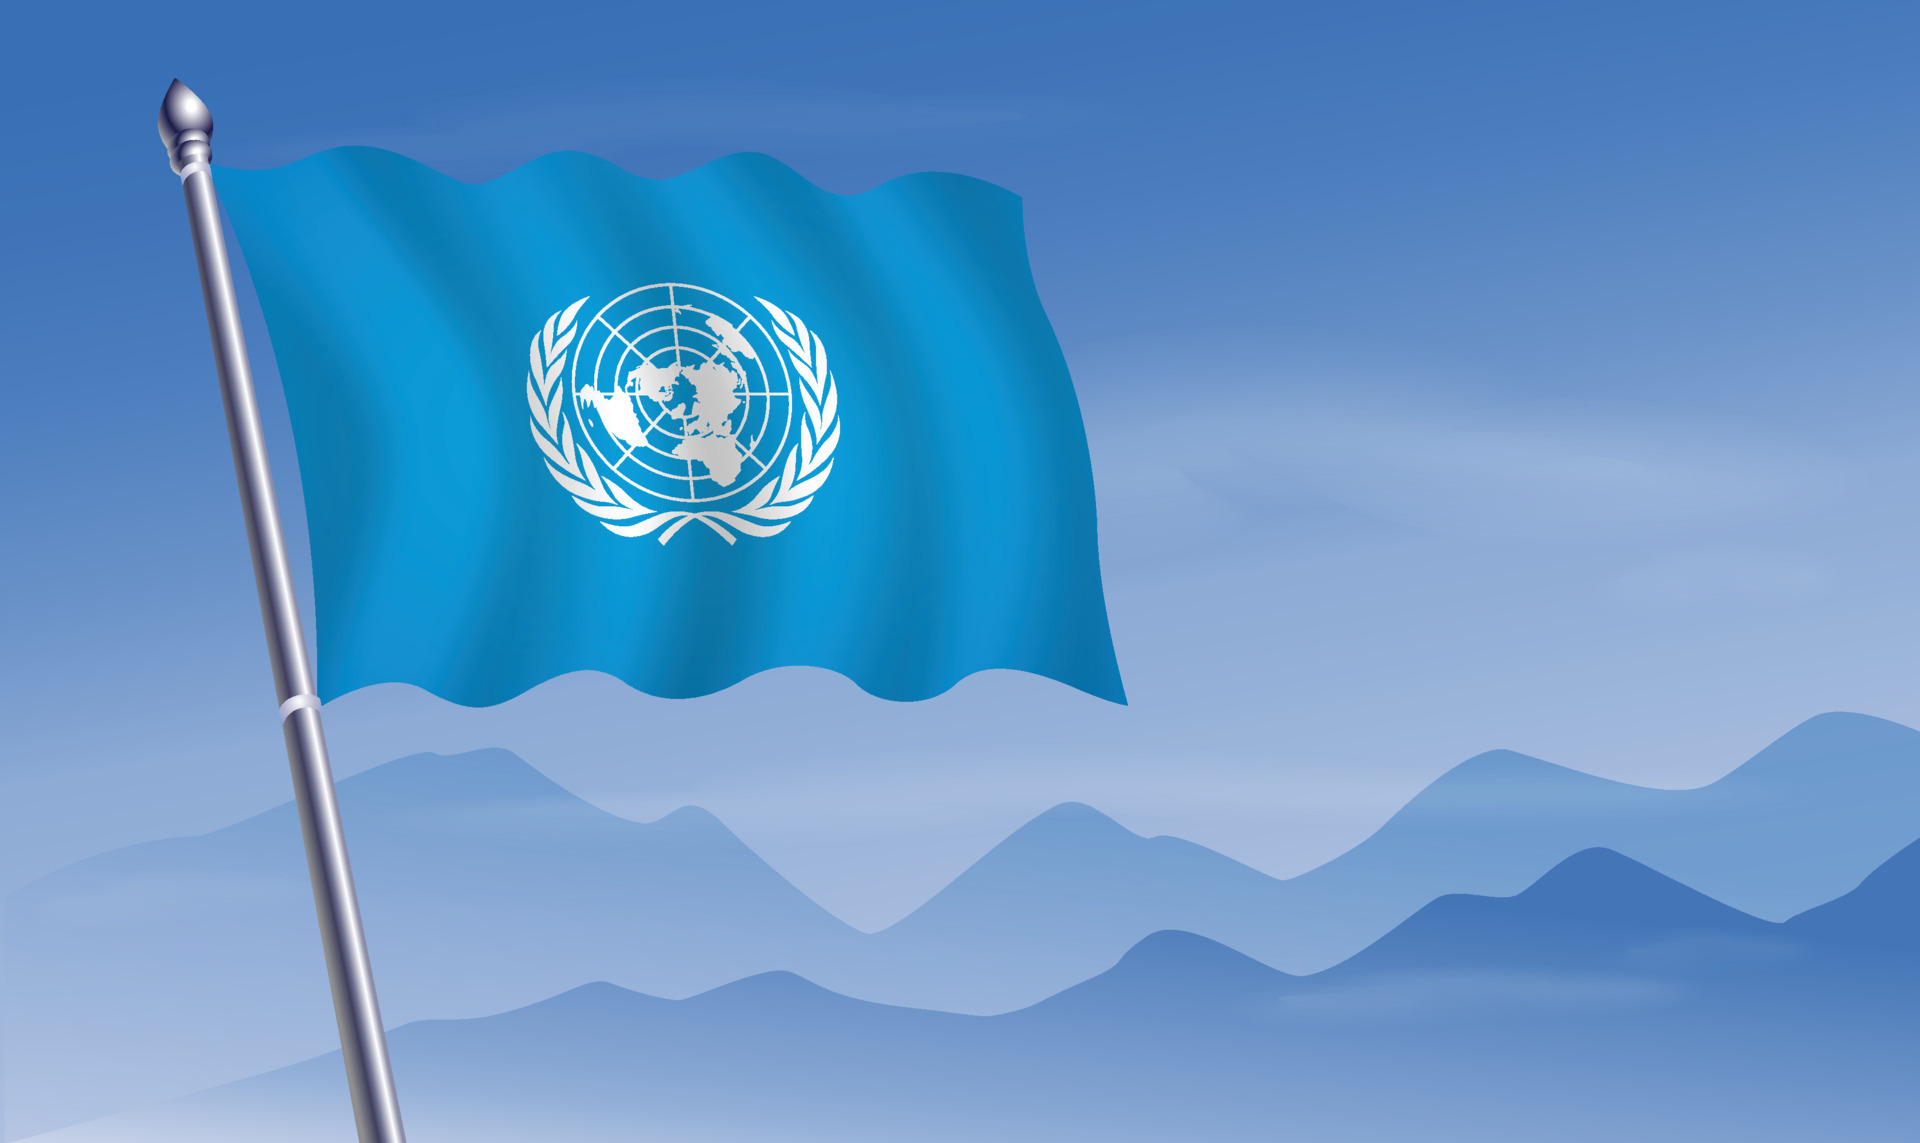 Lá cờ Liên Hợp Quốc trên nền núi và trời 20809554: Bức ảnh đẹp như tranh sẽ khiến bạn không khỏi trầm trồ với vẻ đẹp của quốc kỳ Liên Hợp Quốc bay phấp phới giữa nền trời xanh thiên nhiên. Hãy để bức ảnh này truyền tải thông điệp hòa bình đến mọi ngóc ngách của đất nước.